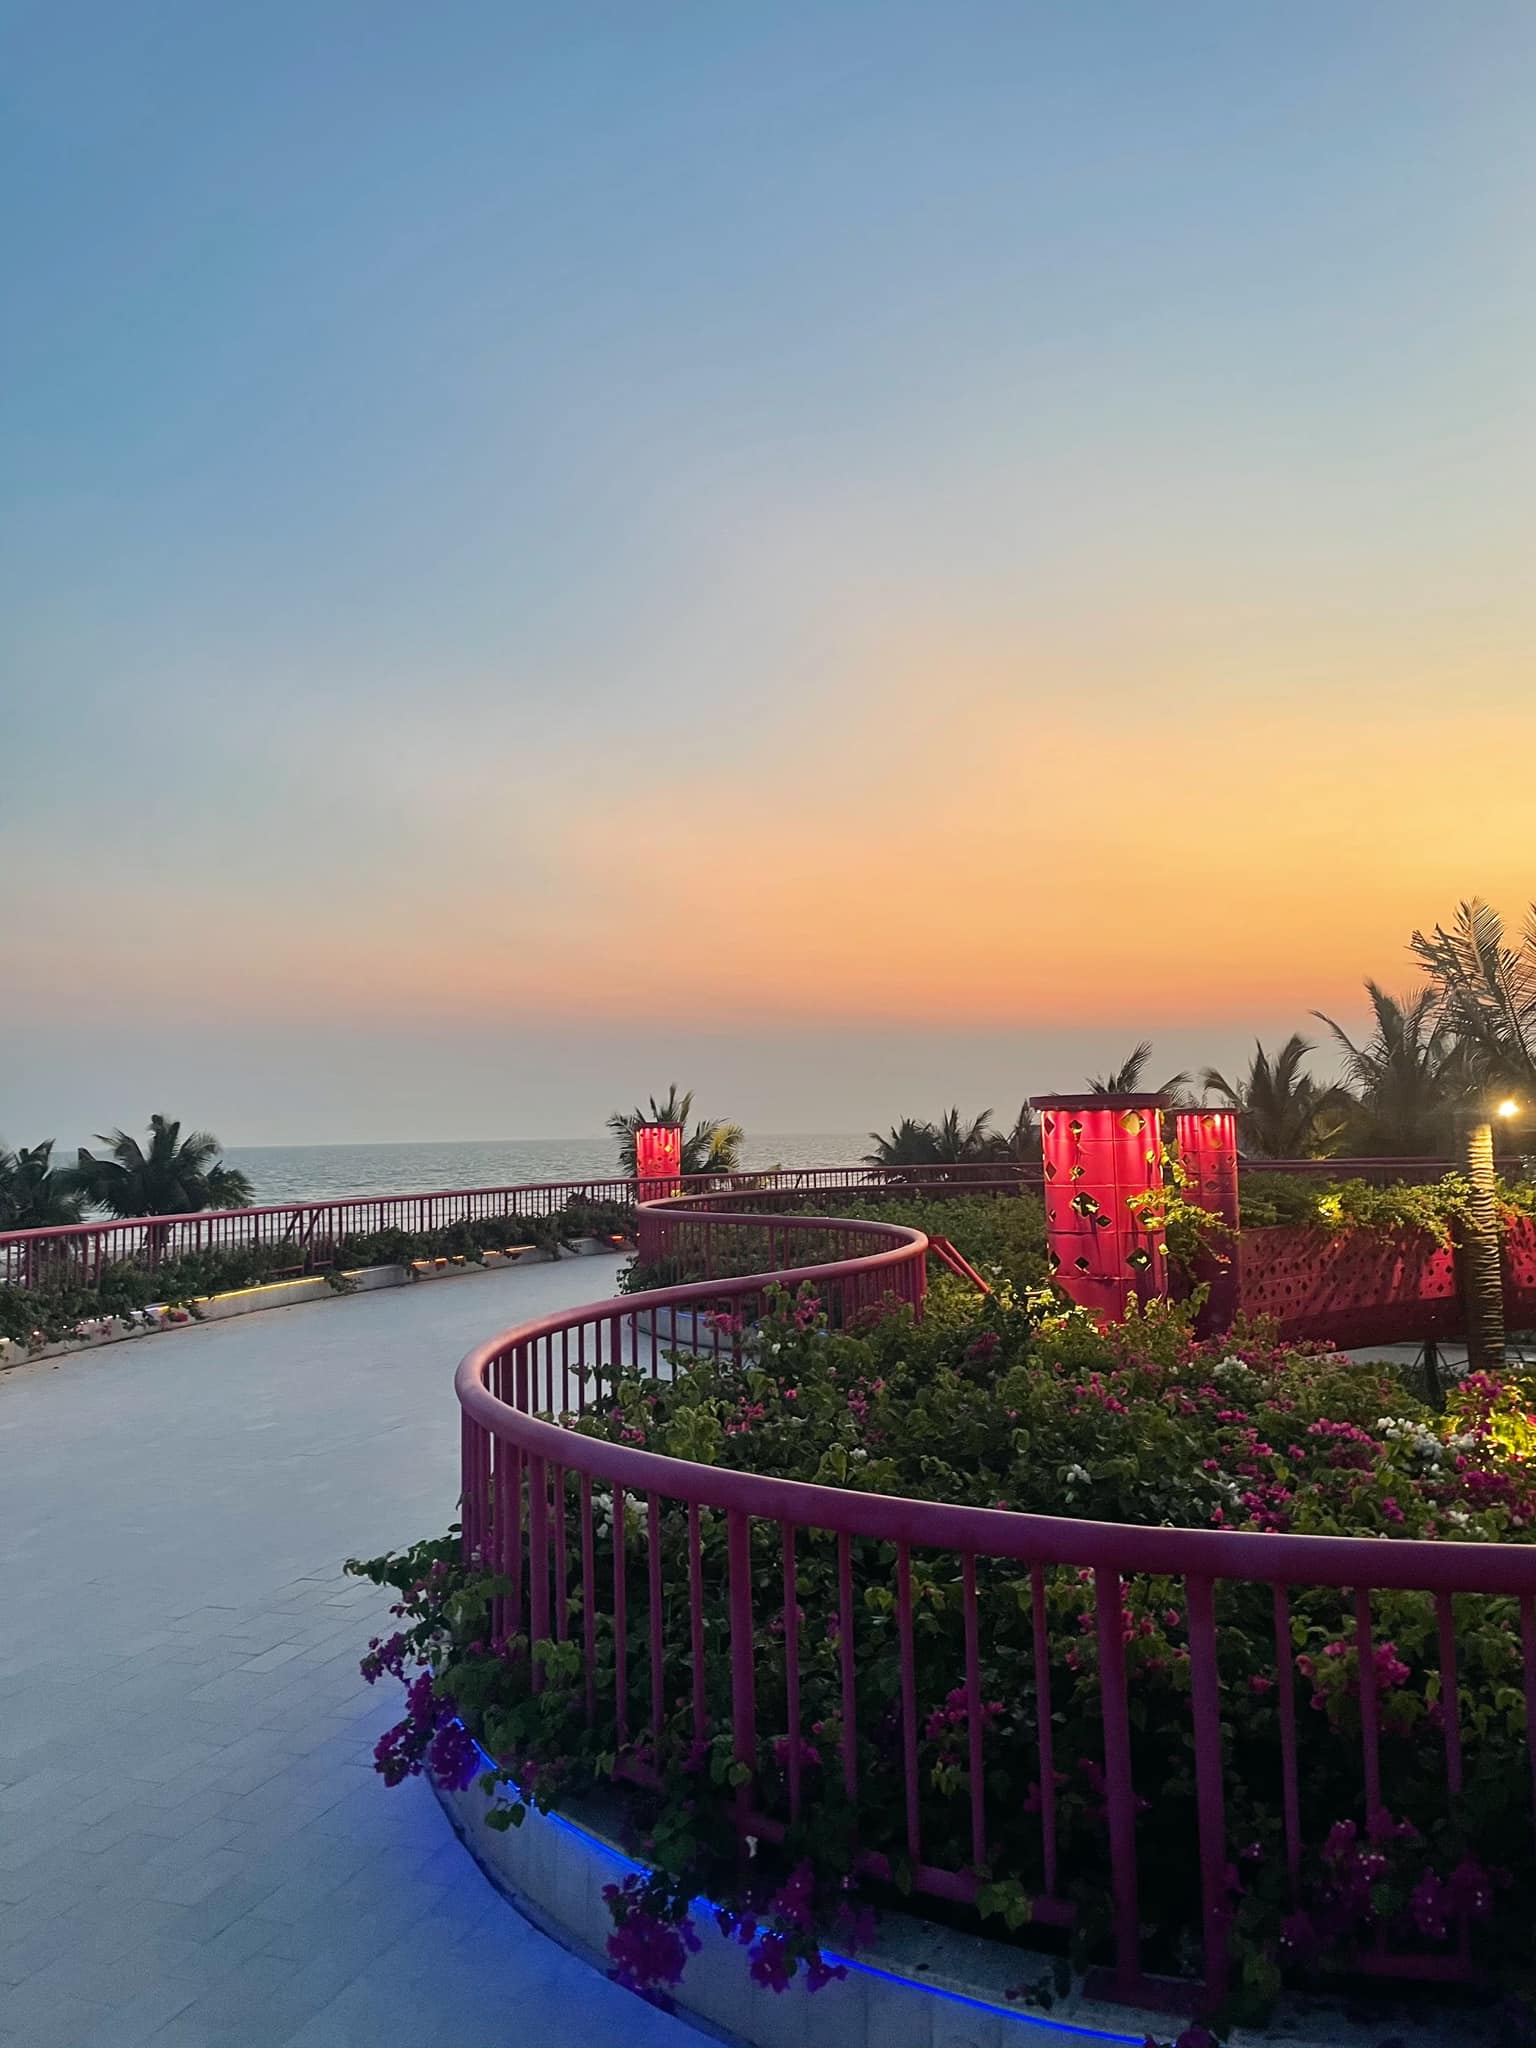 Khu nghỉ dưỡng biển xuất hiện tại Bình Thuận có gì mà ai đến du lịch cũng phải trầm trồ vì quá đẹp - Ảnh 5.